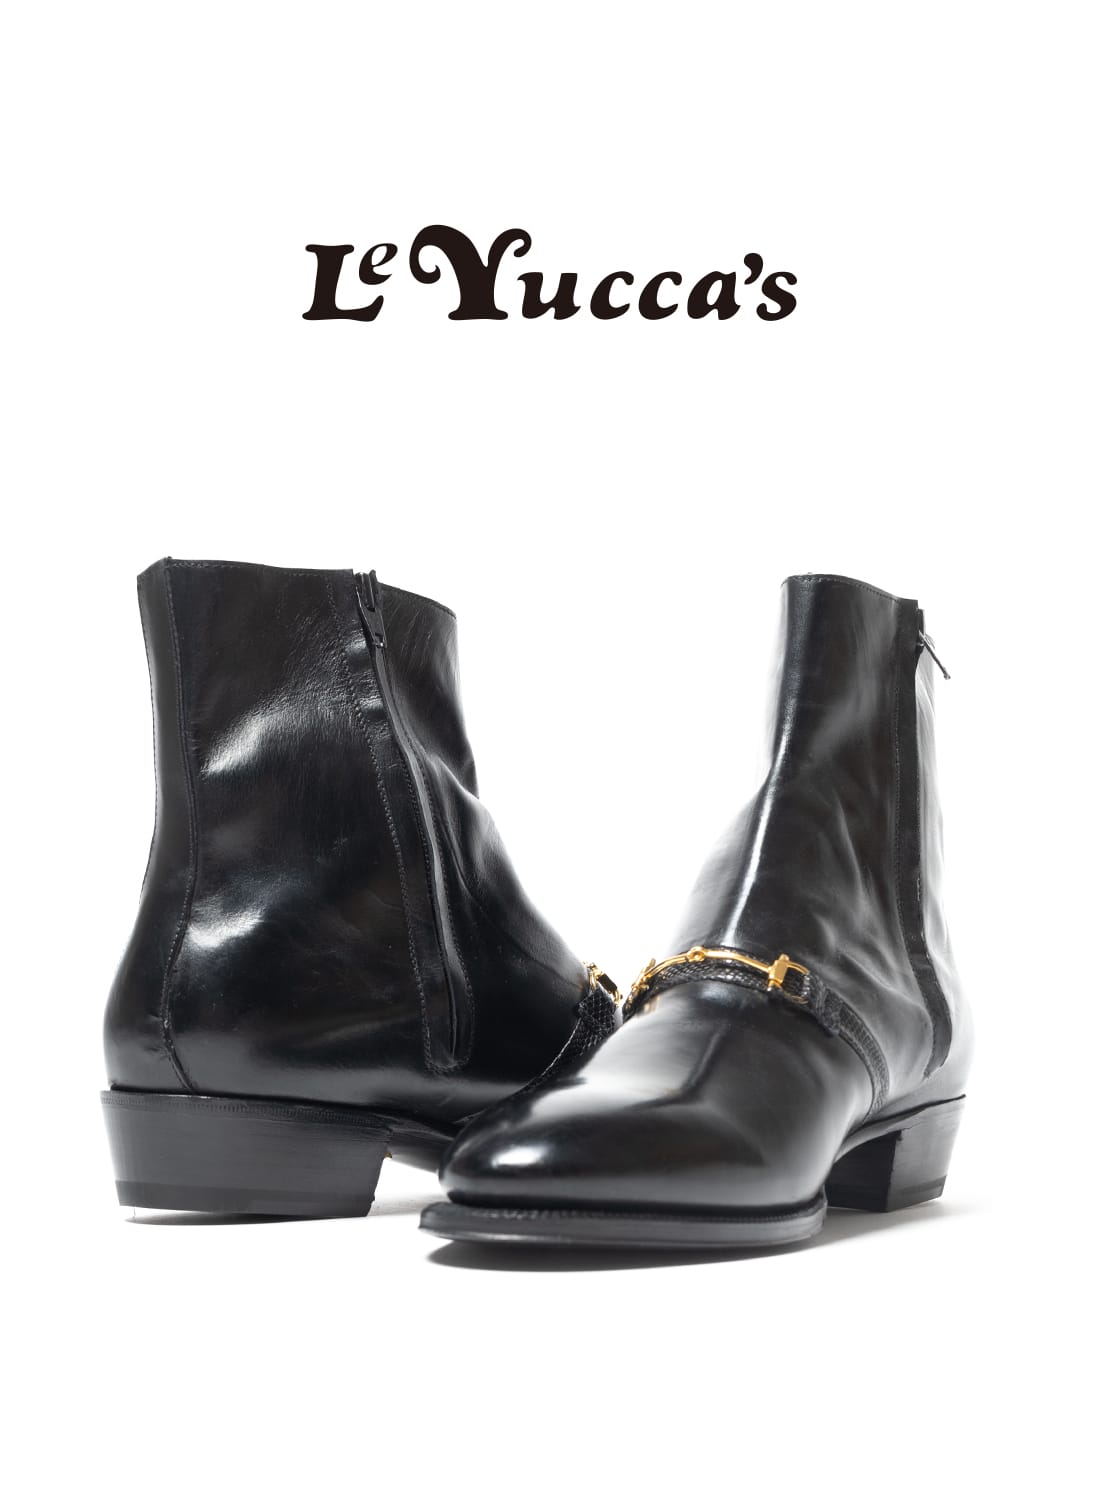 【新品未使用】 Le Yucca's レユッカス サイドジップブーツ サイズ39